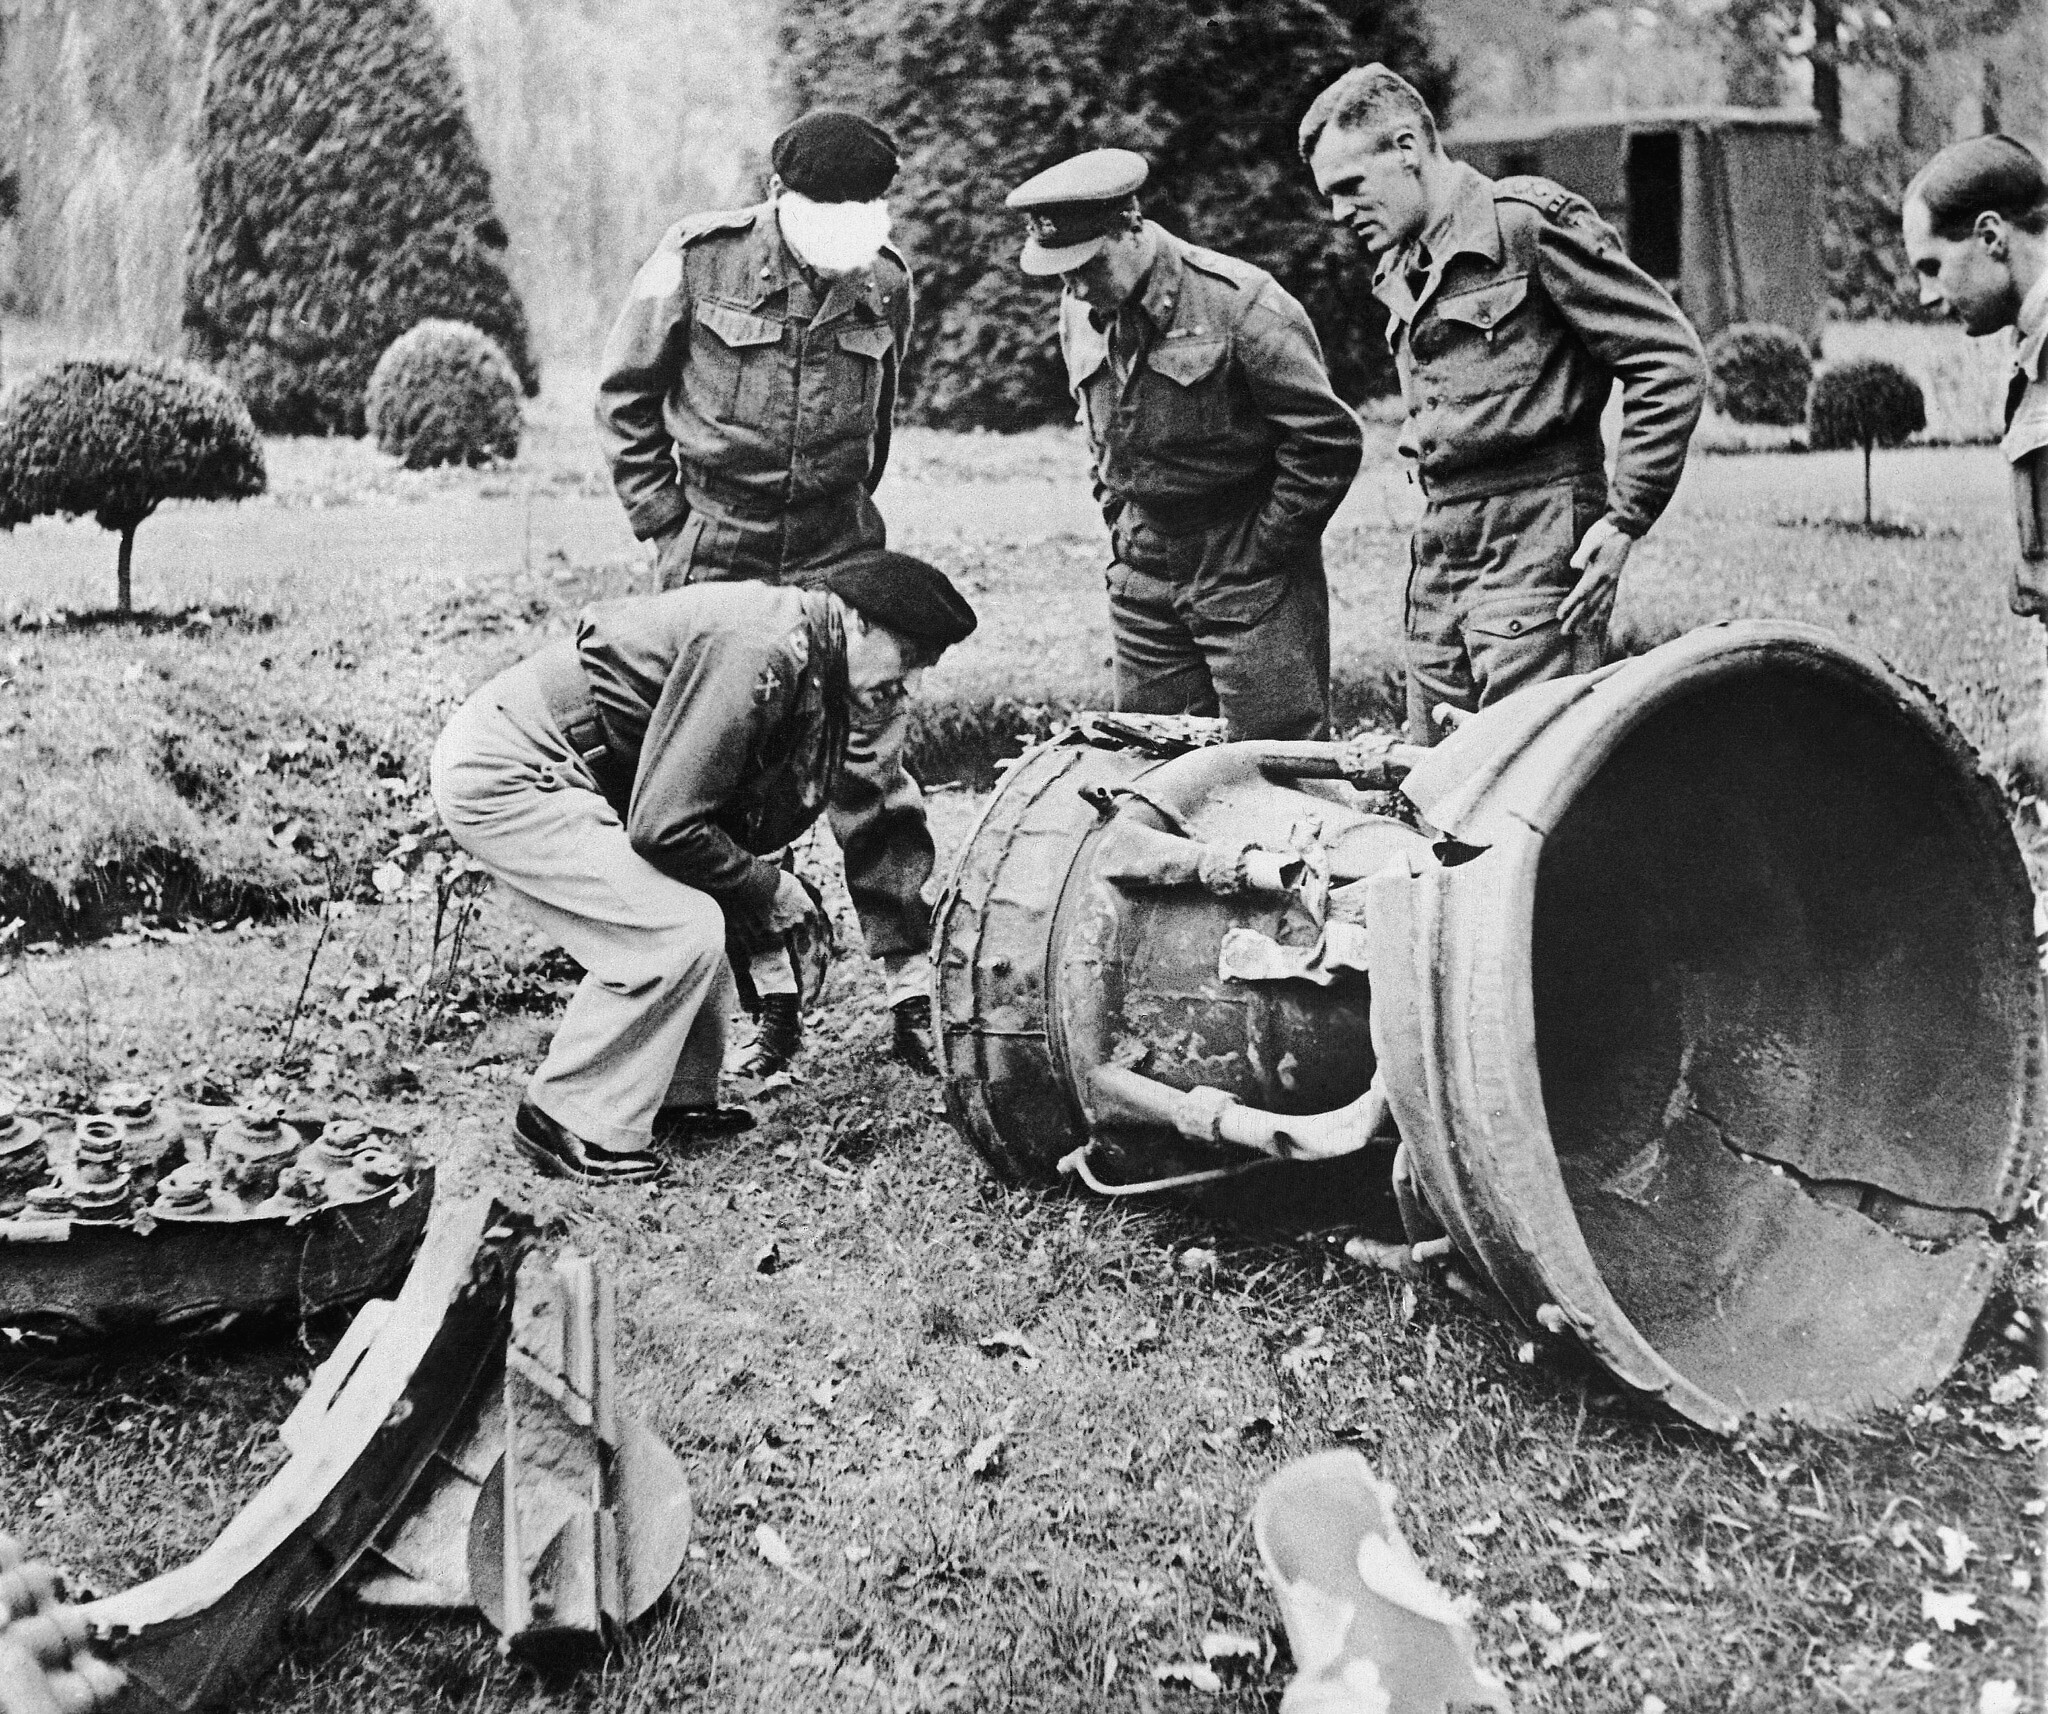 Des officiers britanniques examinent une roquette V2 retombée dans un champ en Belgique, le 4 décembre 1944. (Crédit : AP Photo)